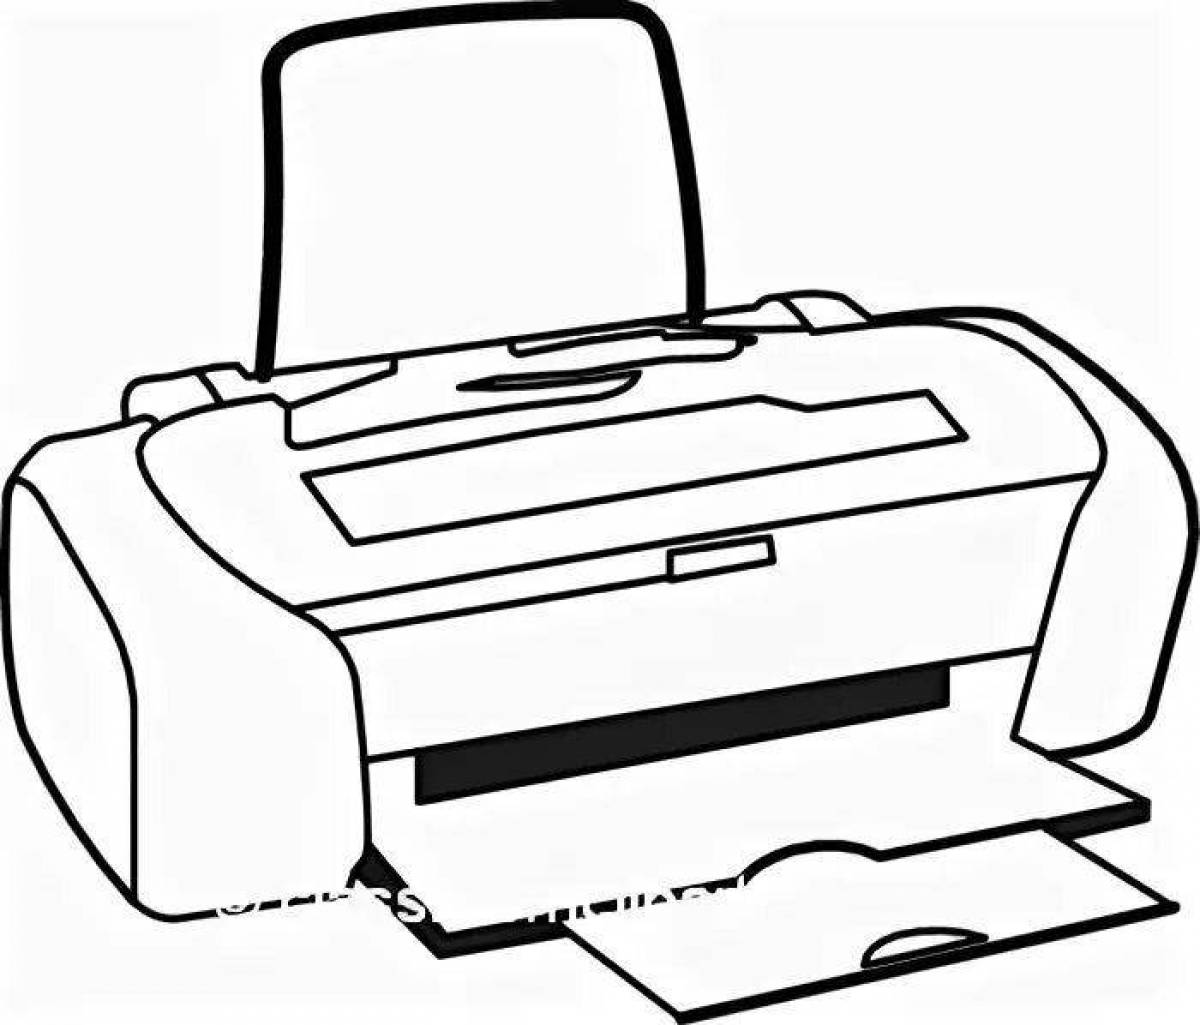 Humorous printer coloring book